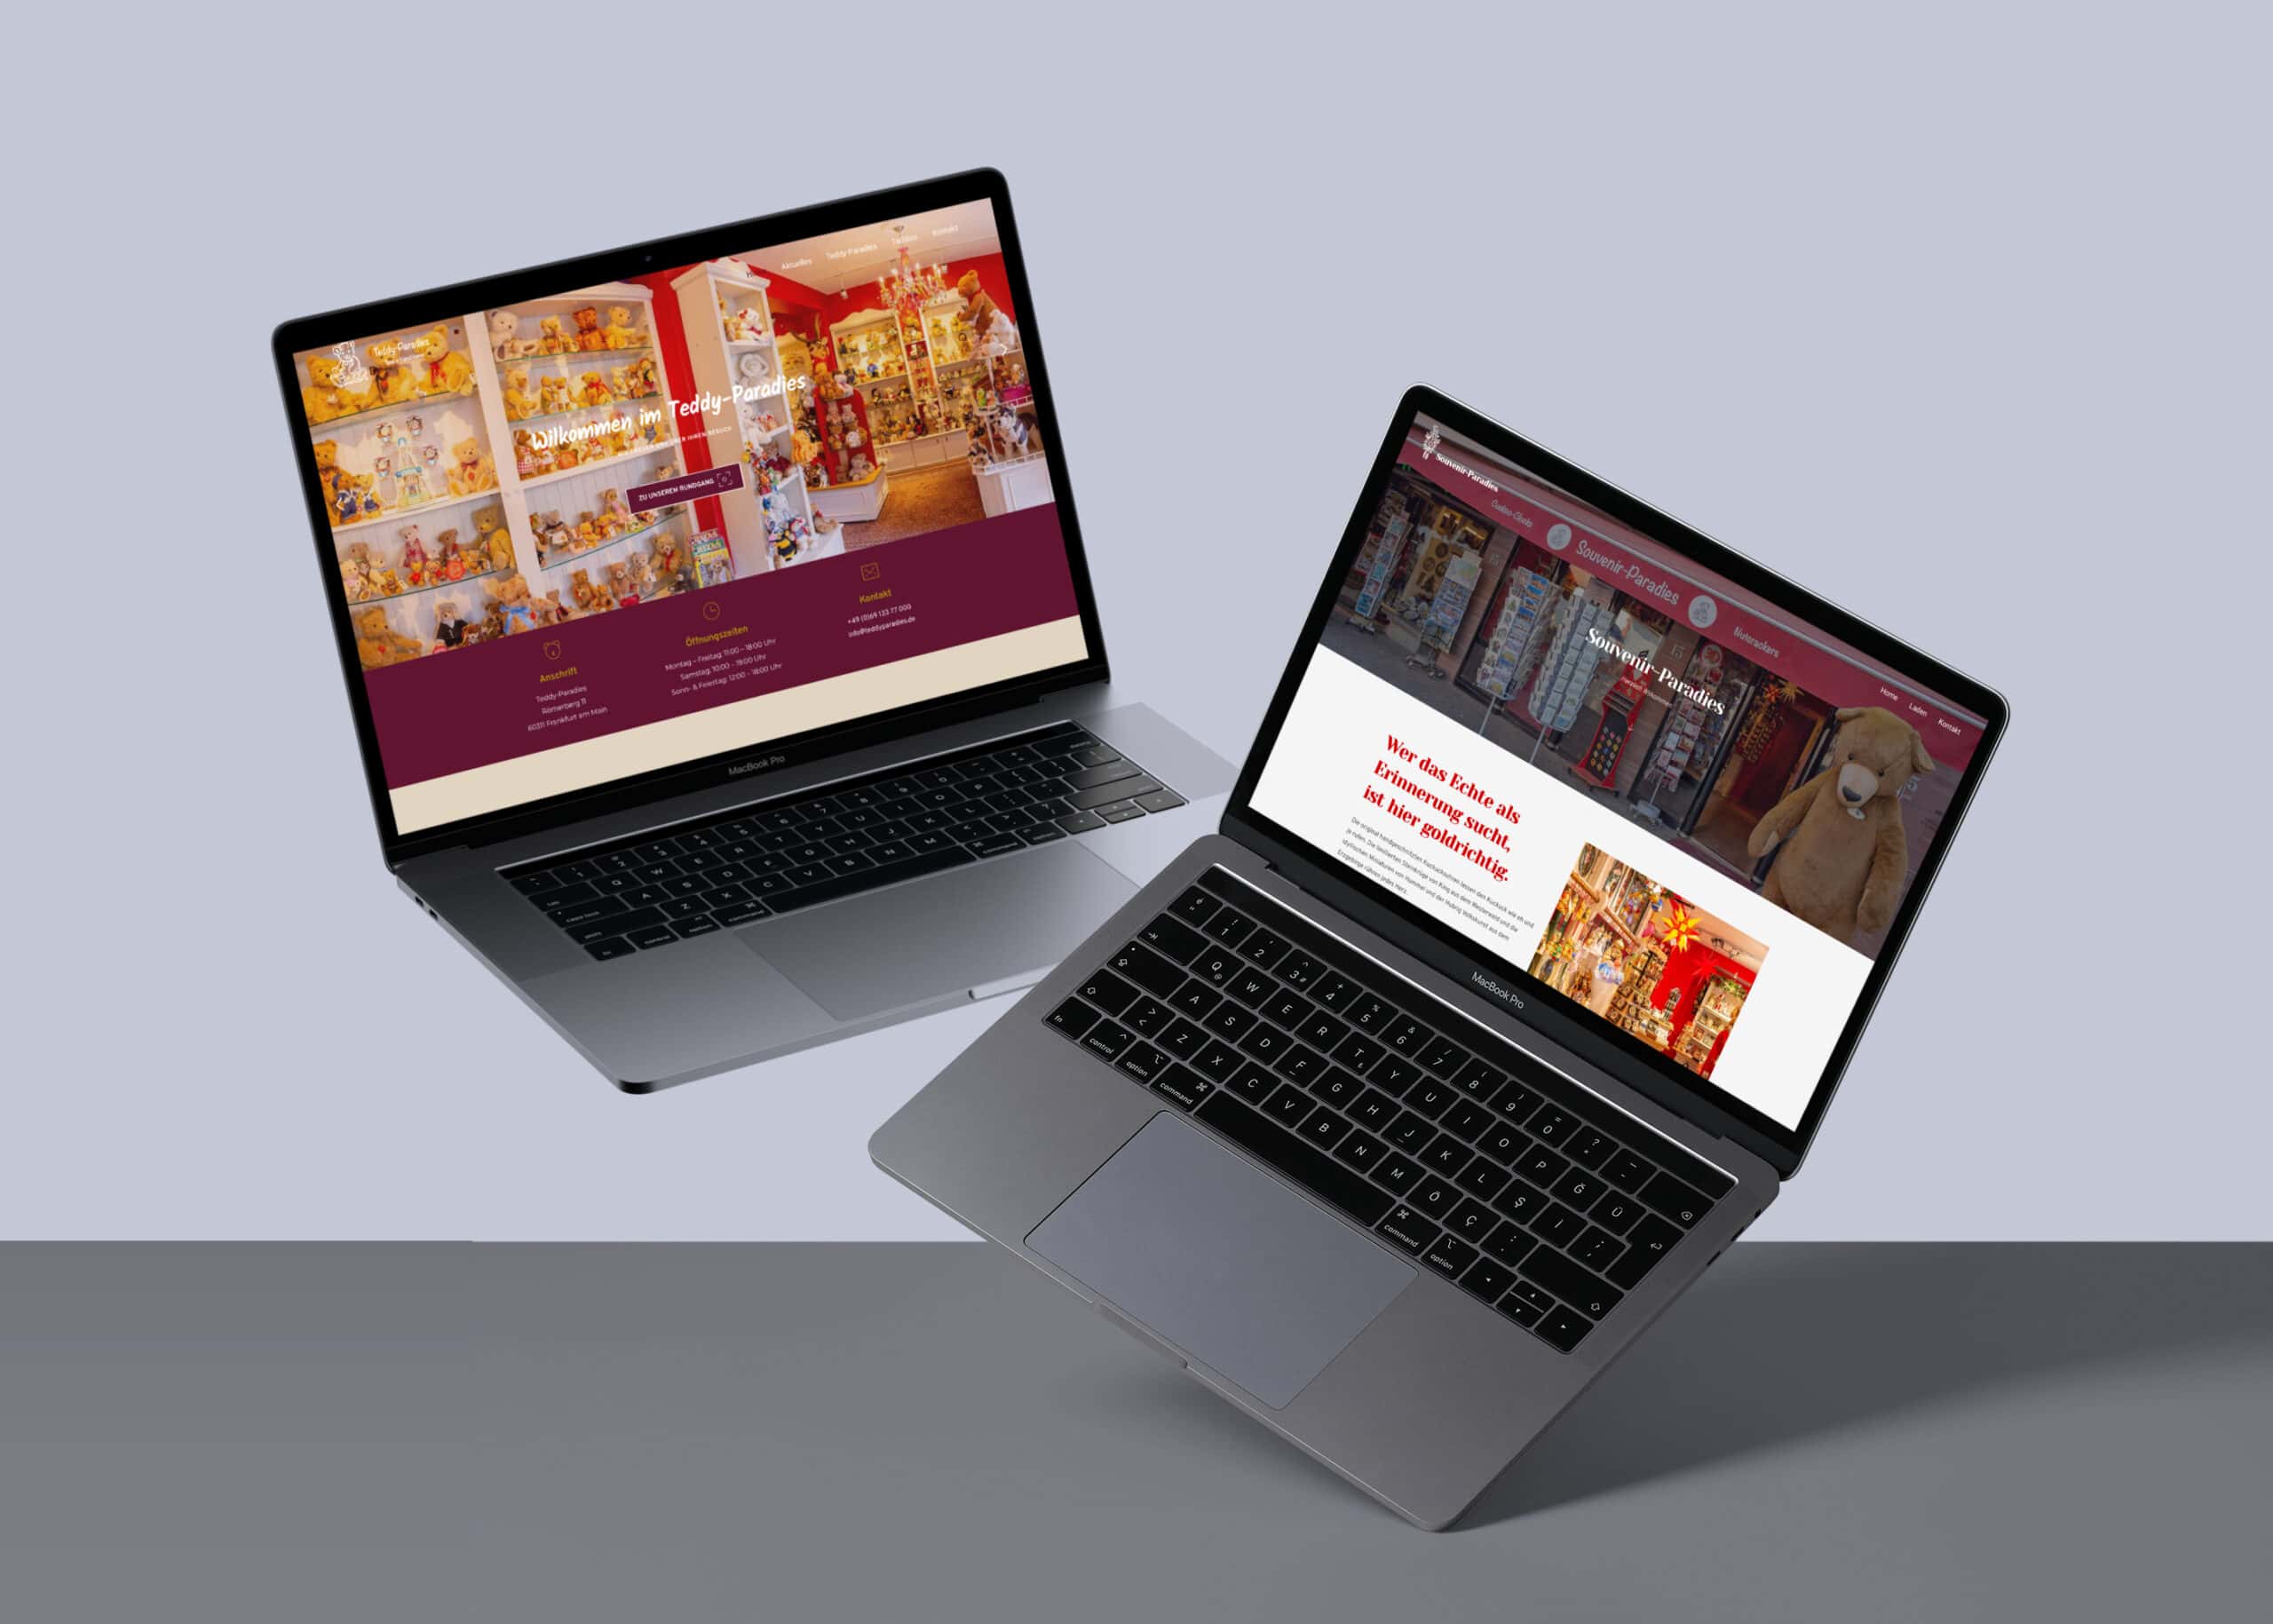 Zwei Laptops zeigen eine Website an.